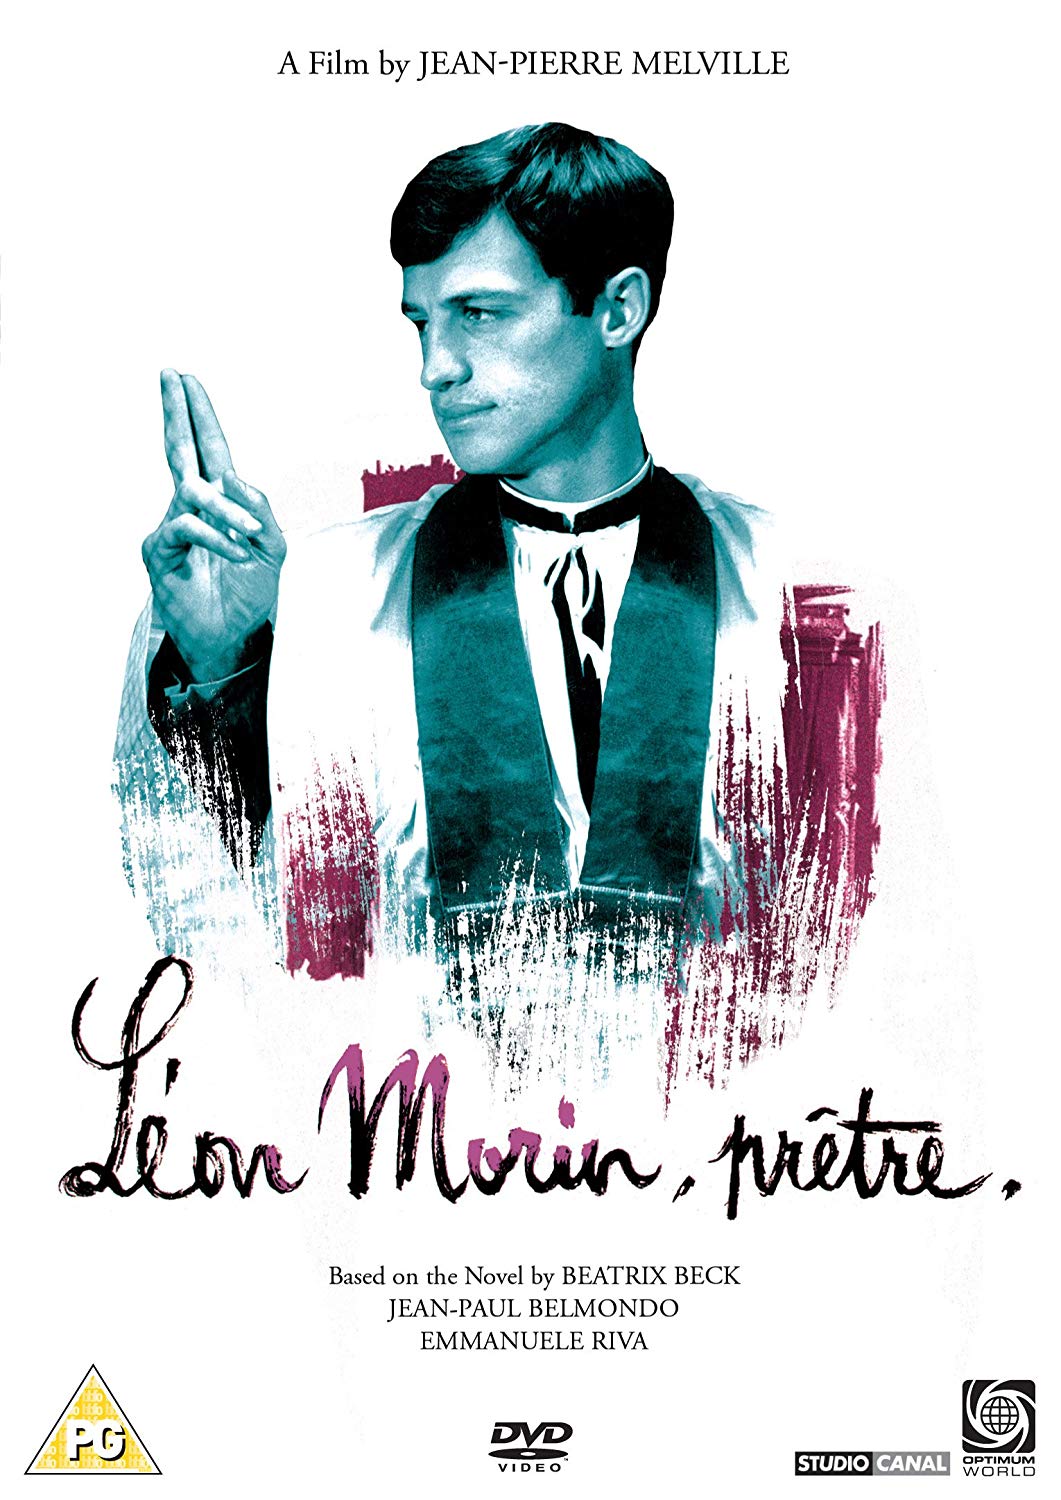 Leon Morin  Pretre (DVD)